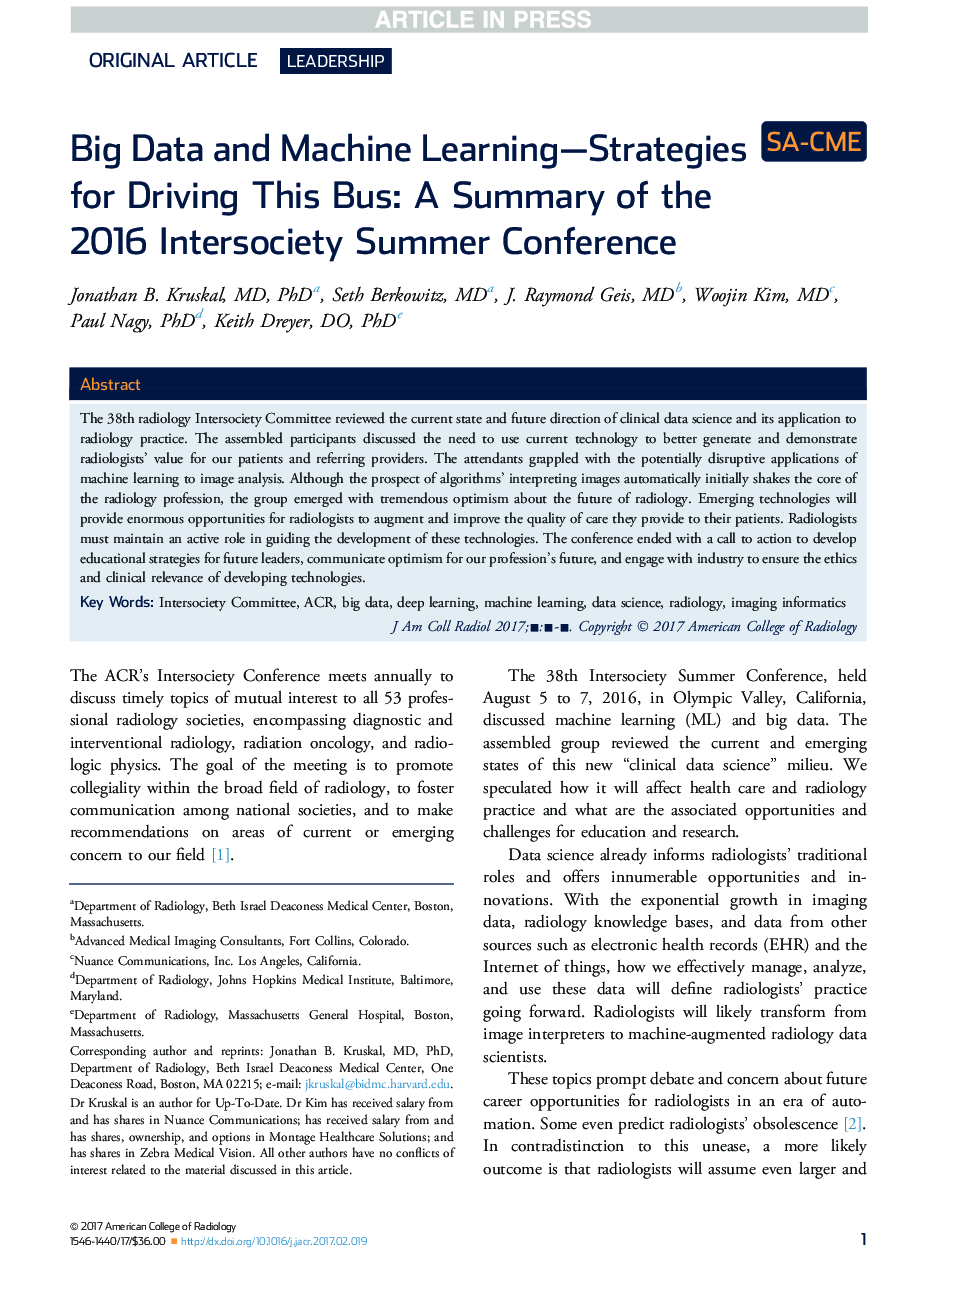 داده های بزرگ و ماشین های یادگیری استراتژی برای رانندگی این اتوبوس: خلاصه ای از کنفرانس تابستانی بین سالهای 2016 